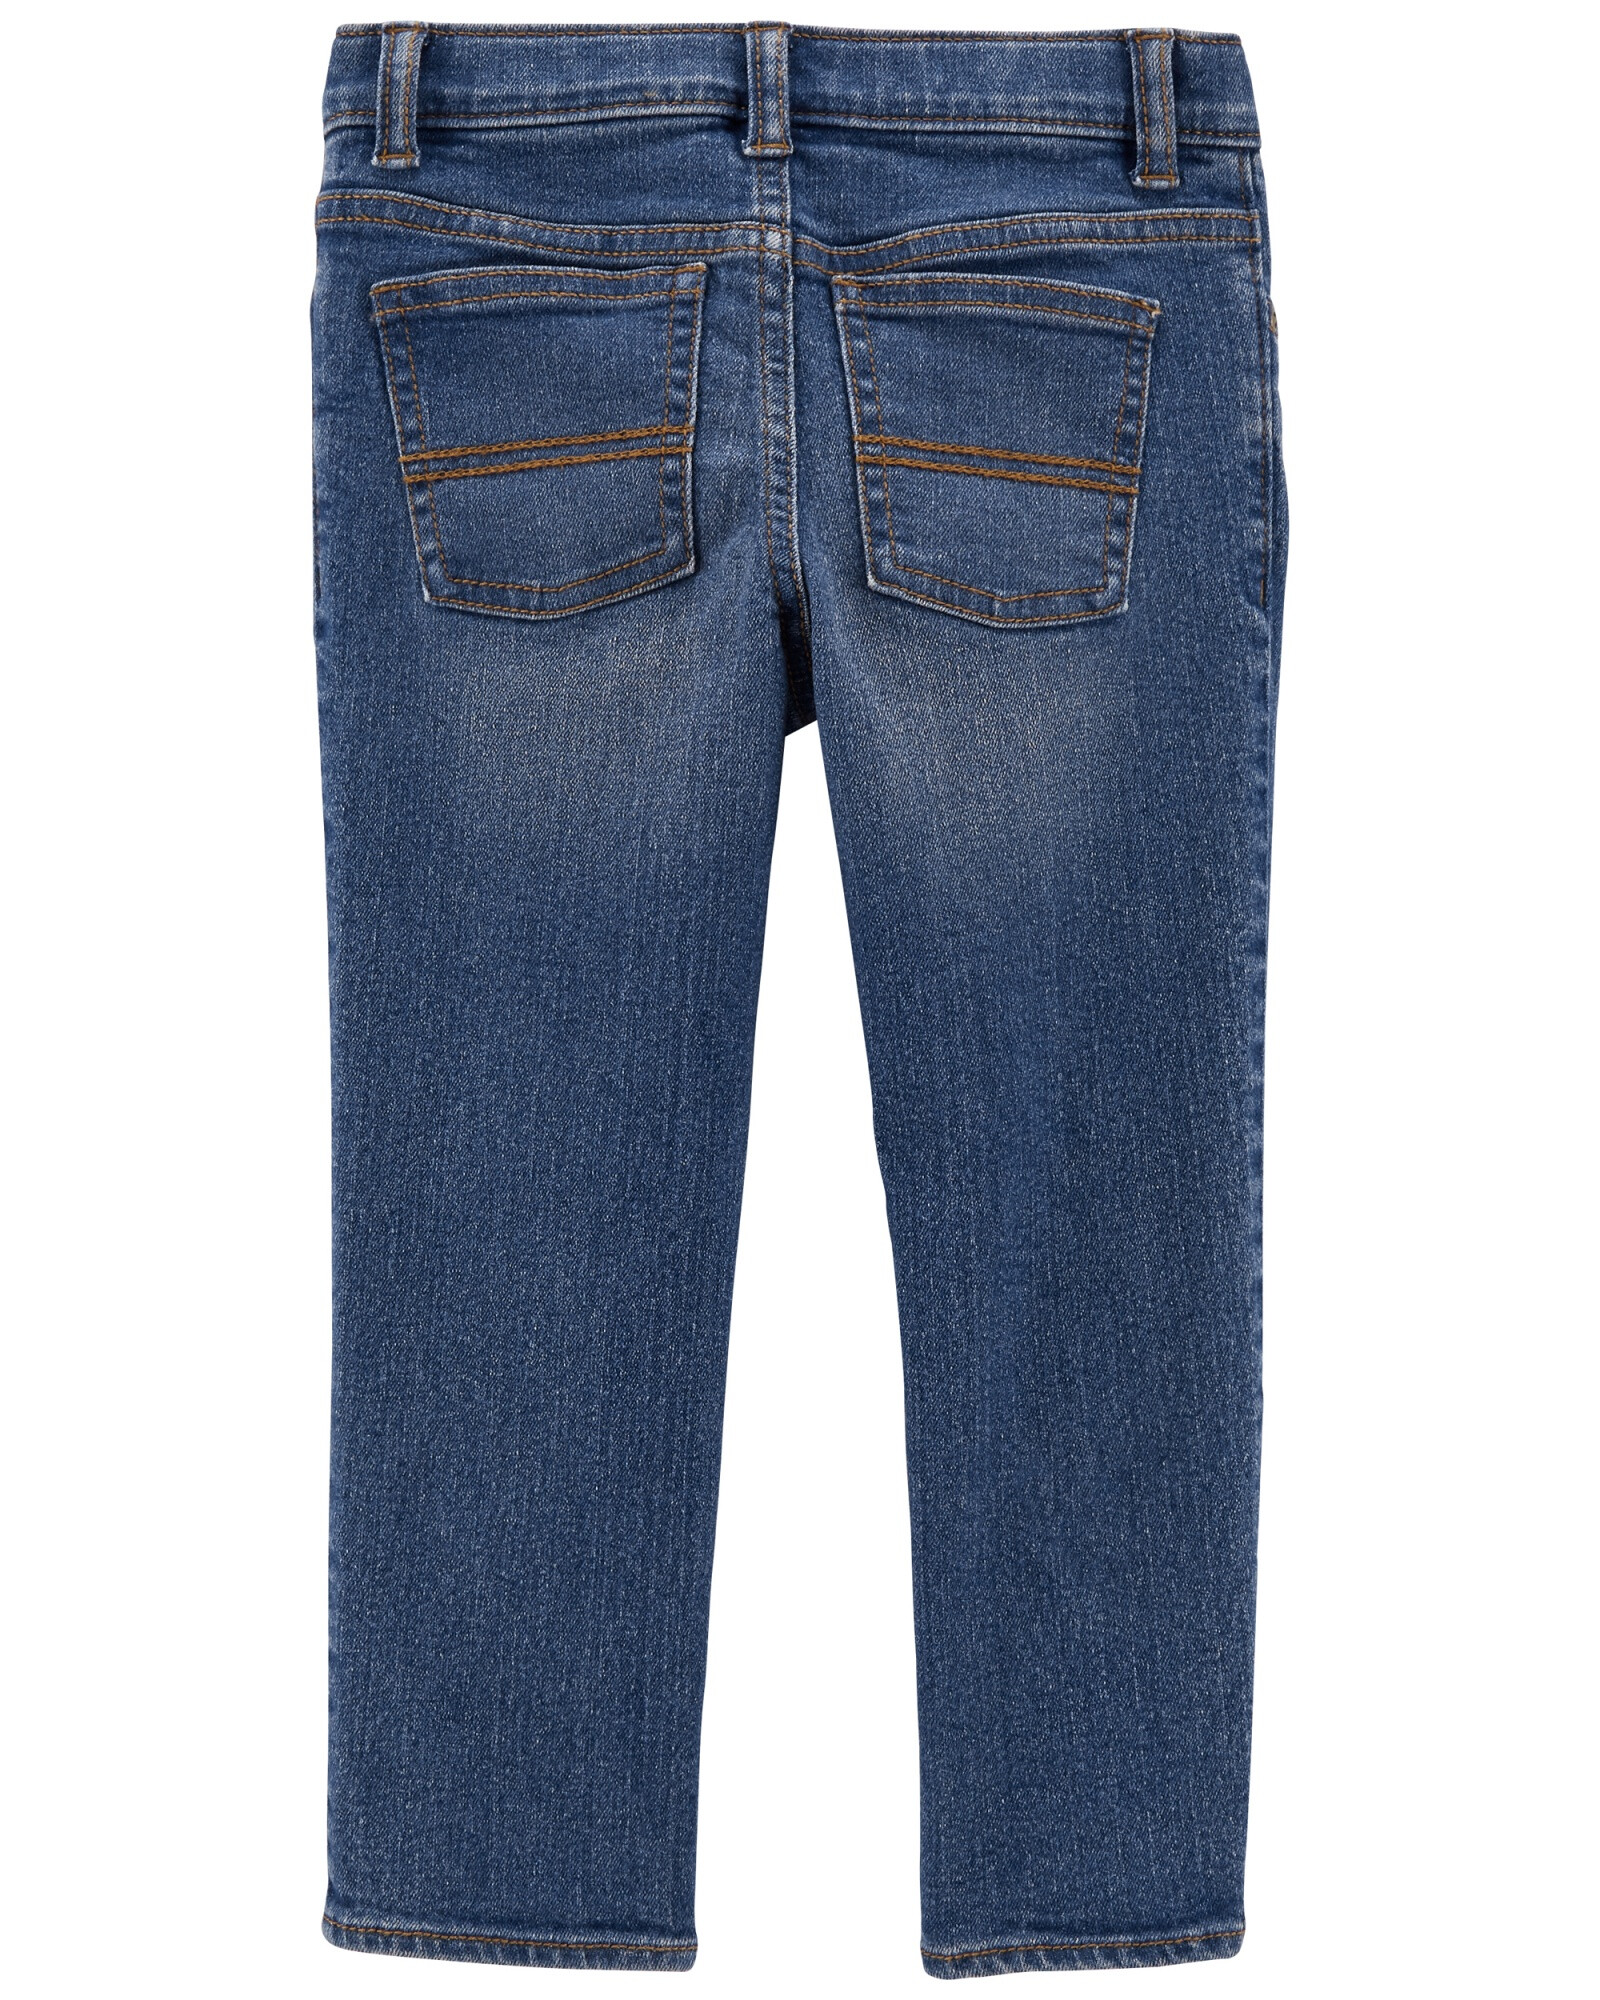 Pantalón de jean clásico lavado medio. Talles 9-24M Sin color